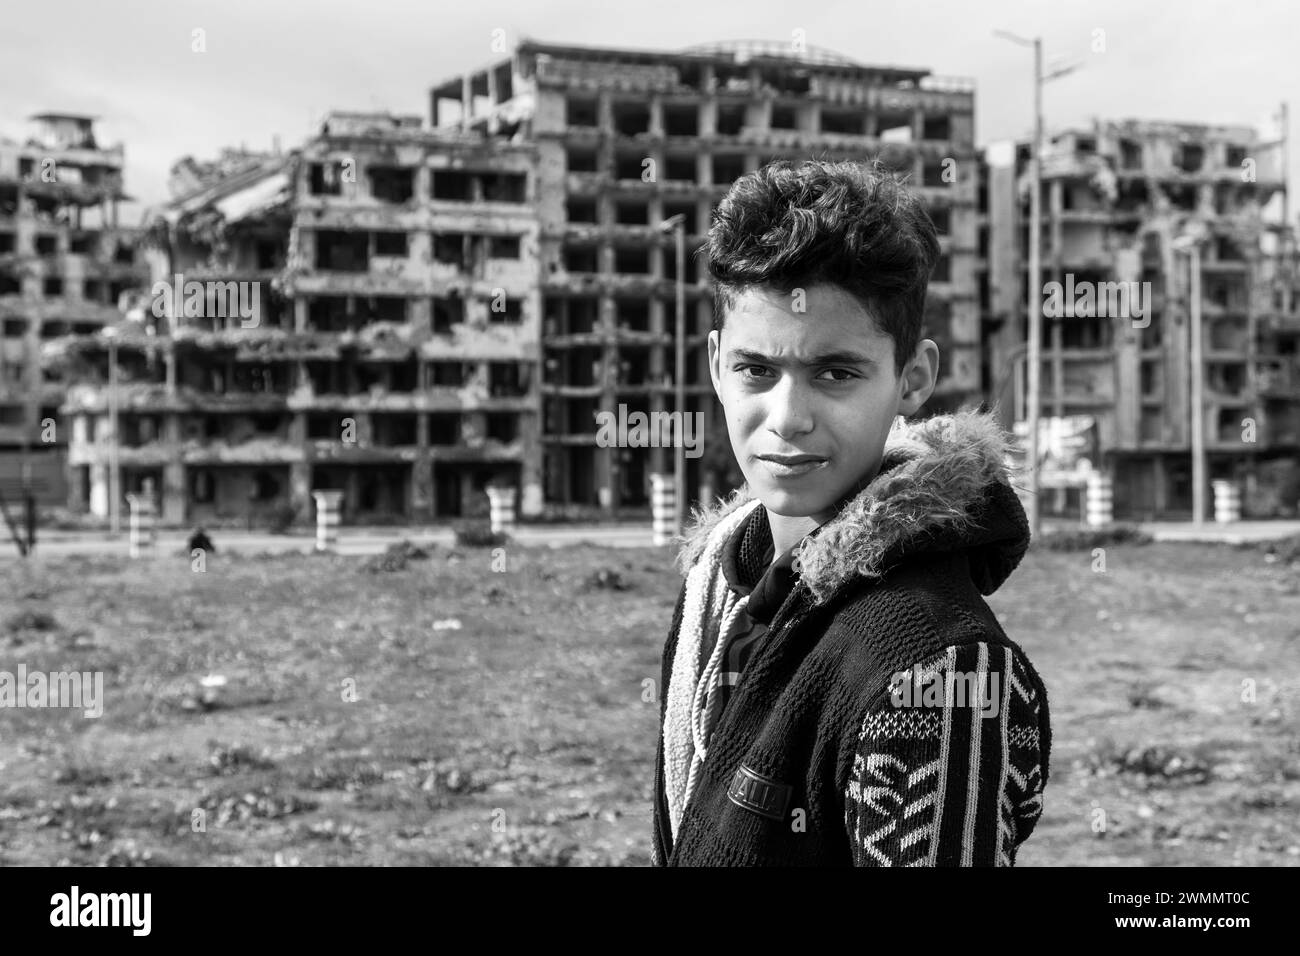 Syrie, Homs, vie quotidienne dans un quartier détruit par les bombardements, portrait Banque D'Images